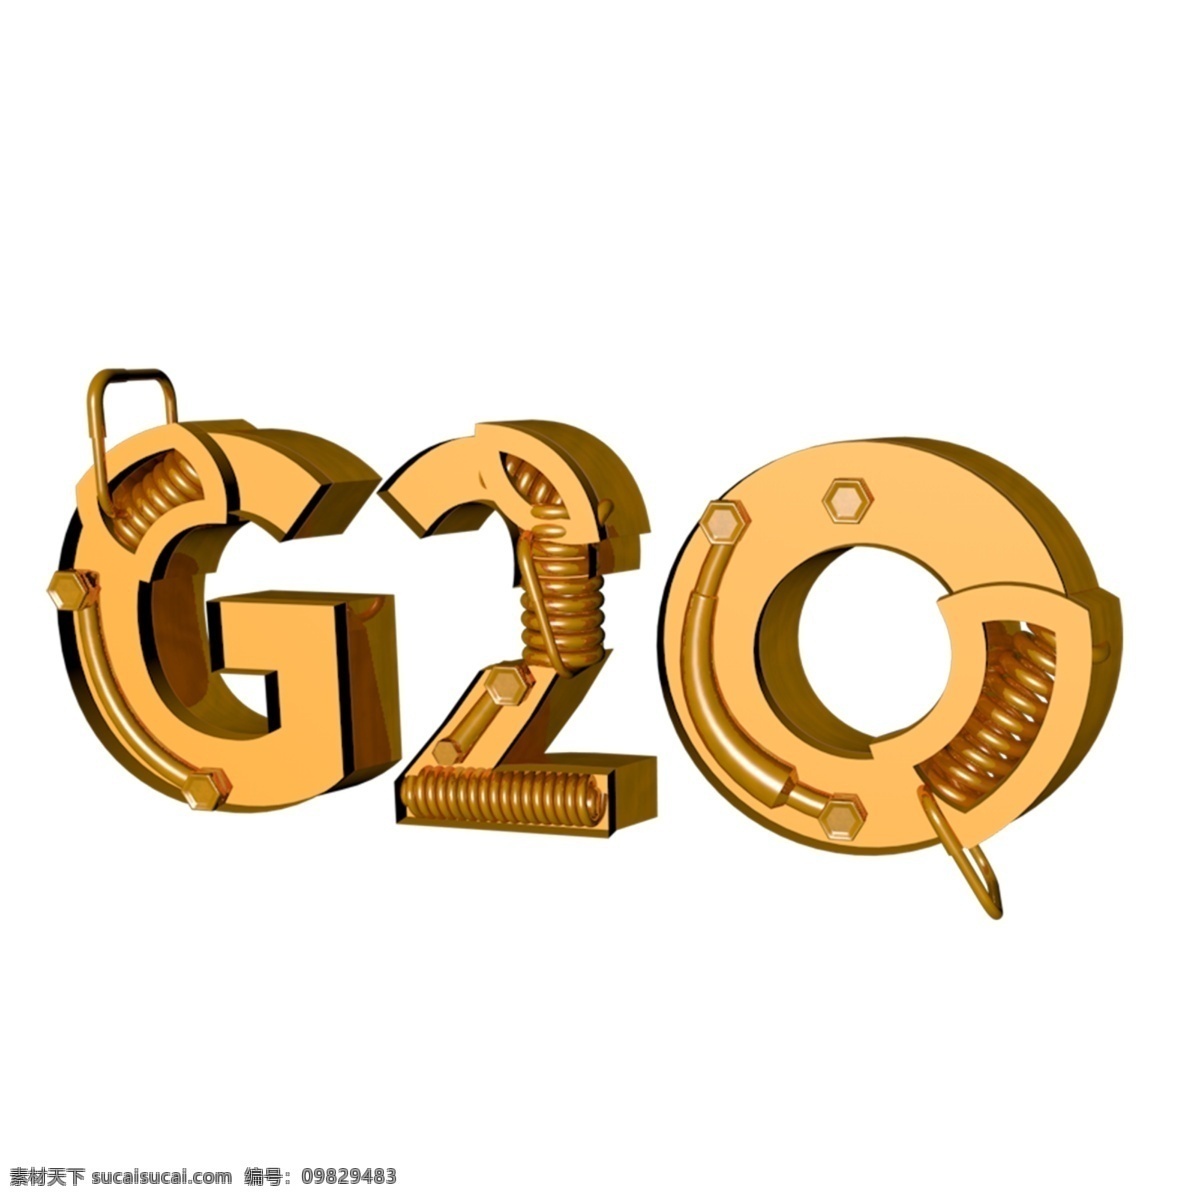 c4d 渲染 g20 艺术 字 g2o g20峰会 峰会 g20艺术字 主题